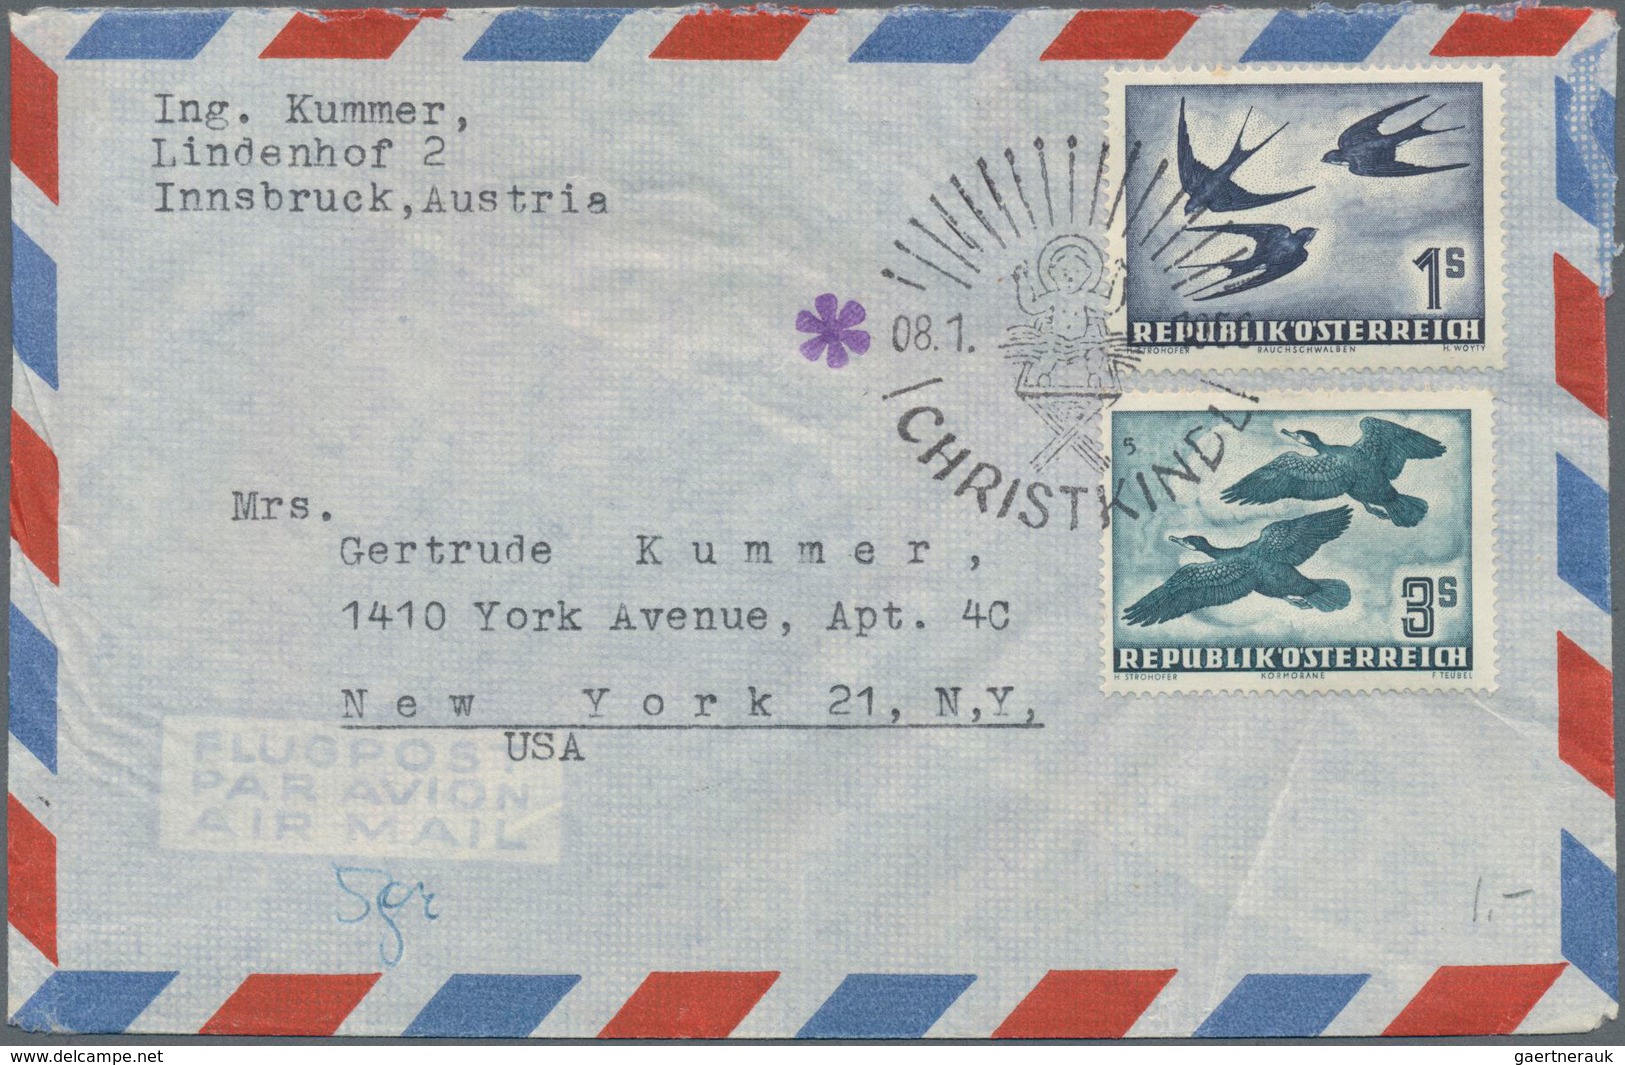 Österreich: 1950/1990. Hochwertige Belege-Sammlung CHRISTKINDL in Album. Dabei Brief vom 22.12.50, Z